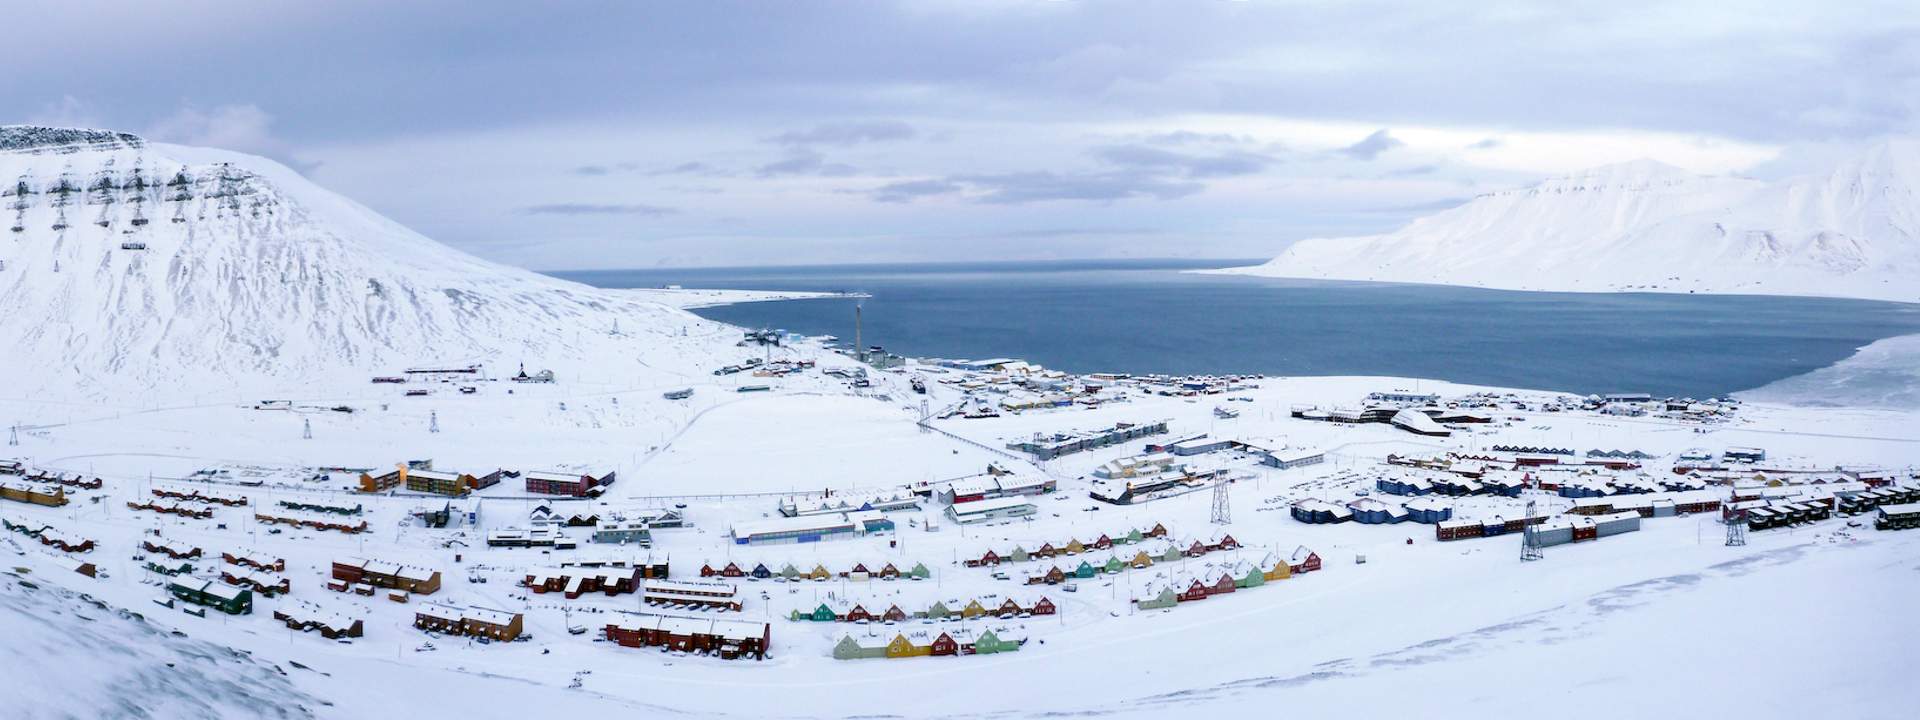 Spitzberg, Groenland, Islande : une traversée de 14 jours dans le grand nord